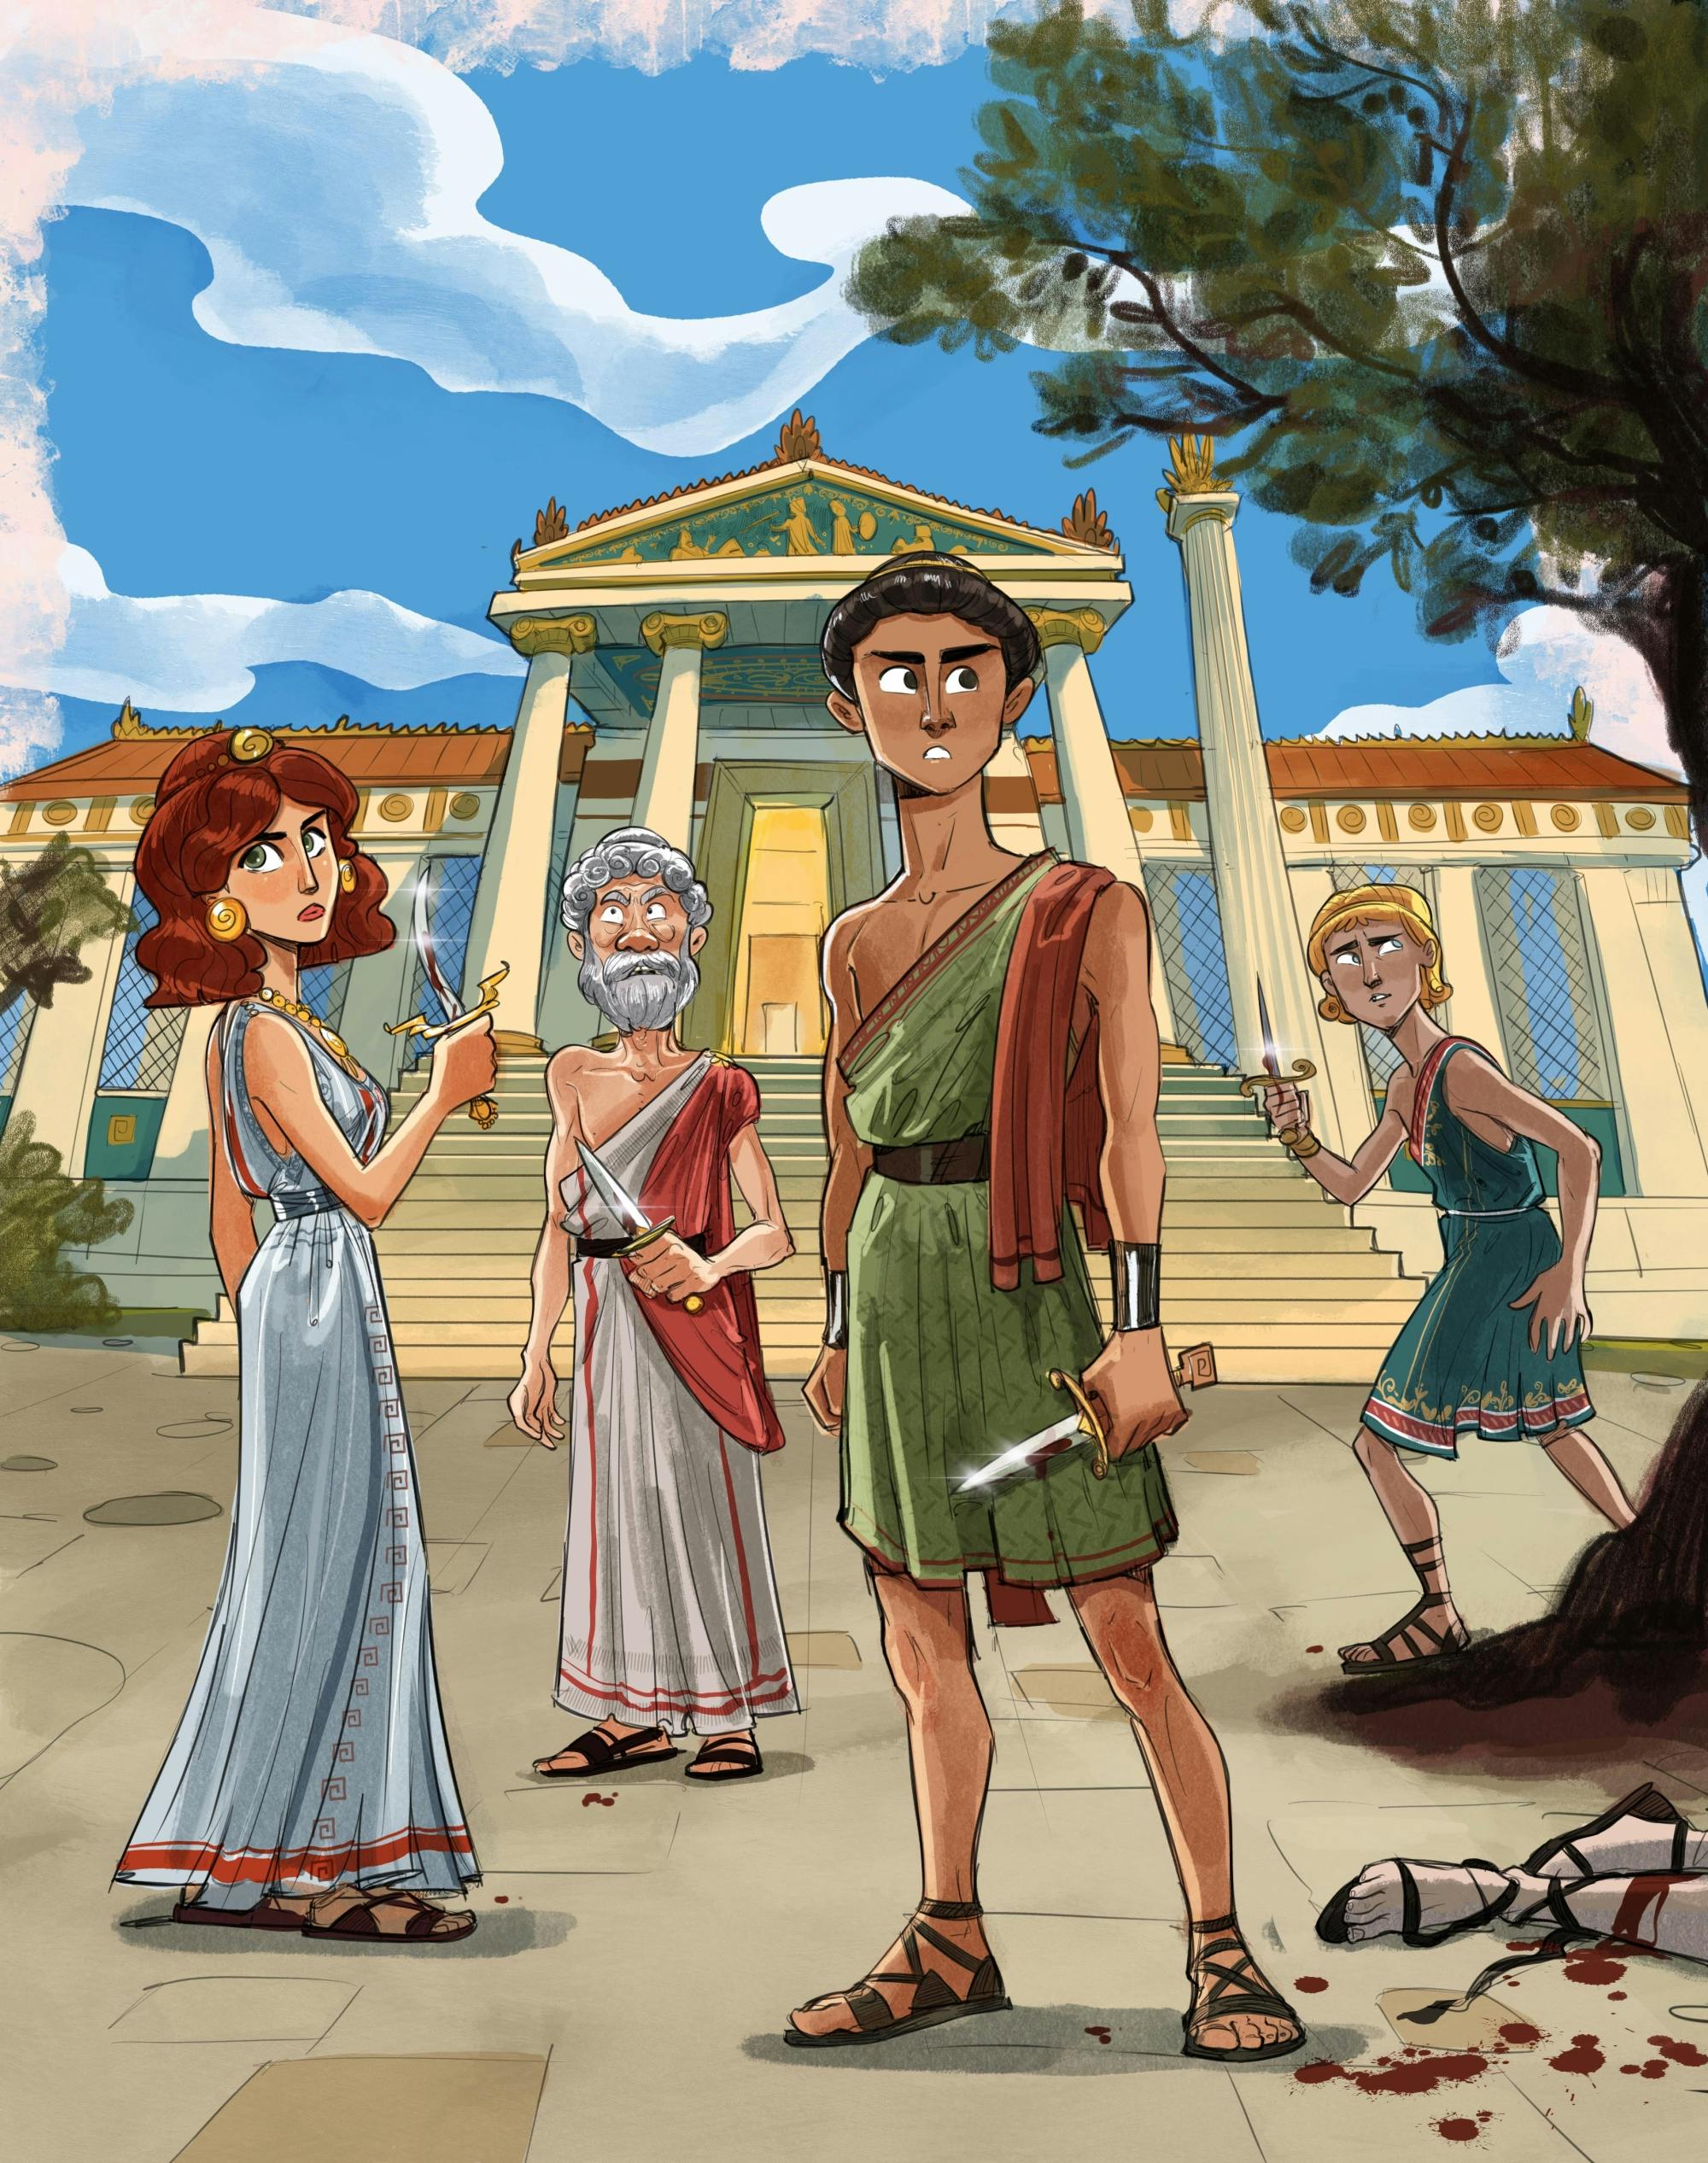 Jeu de mystère de meurtre grec ancien interactif en direct à Athènes